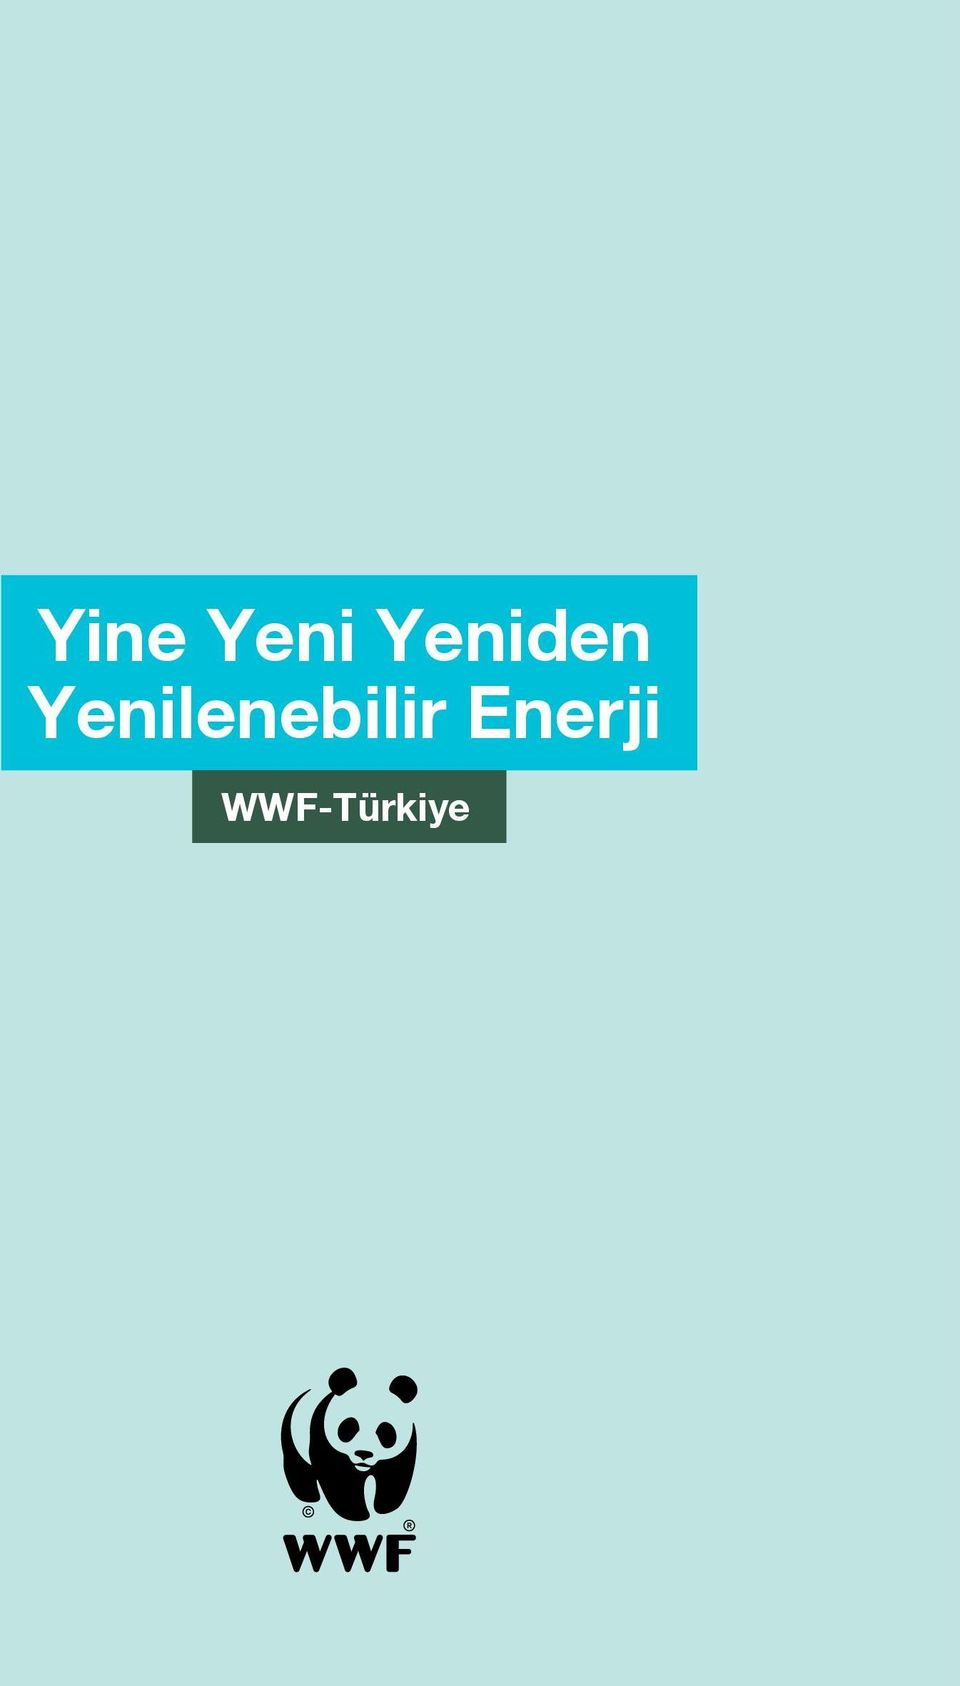 WWF-Türkiye   1